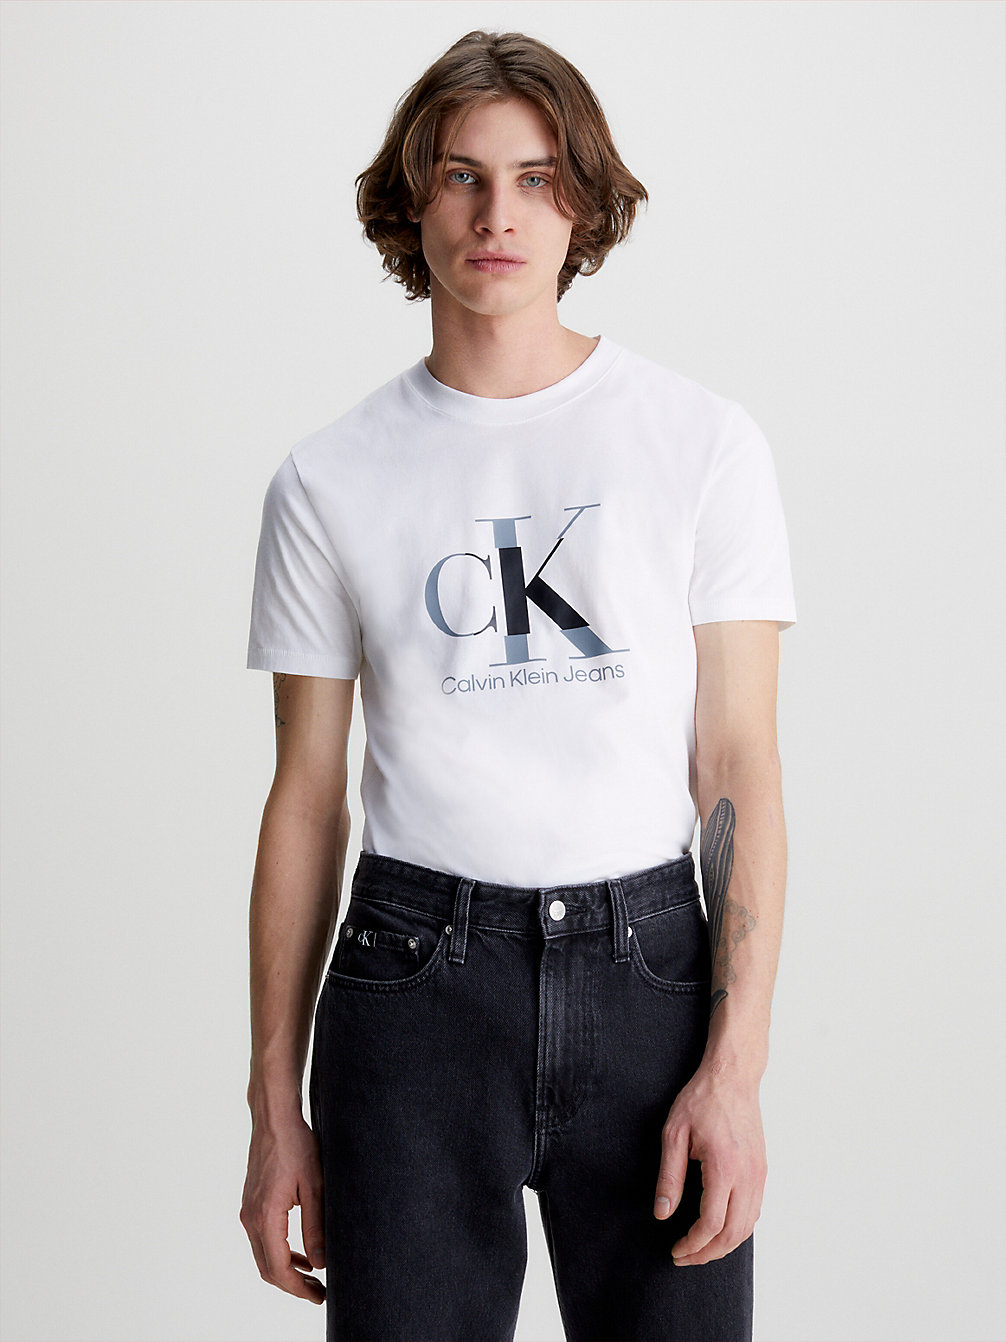 BRIGHT WHITE > Schmales Monogramm-T-Shirt > undefined Herren - Calvin Klein